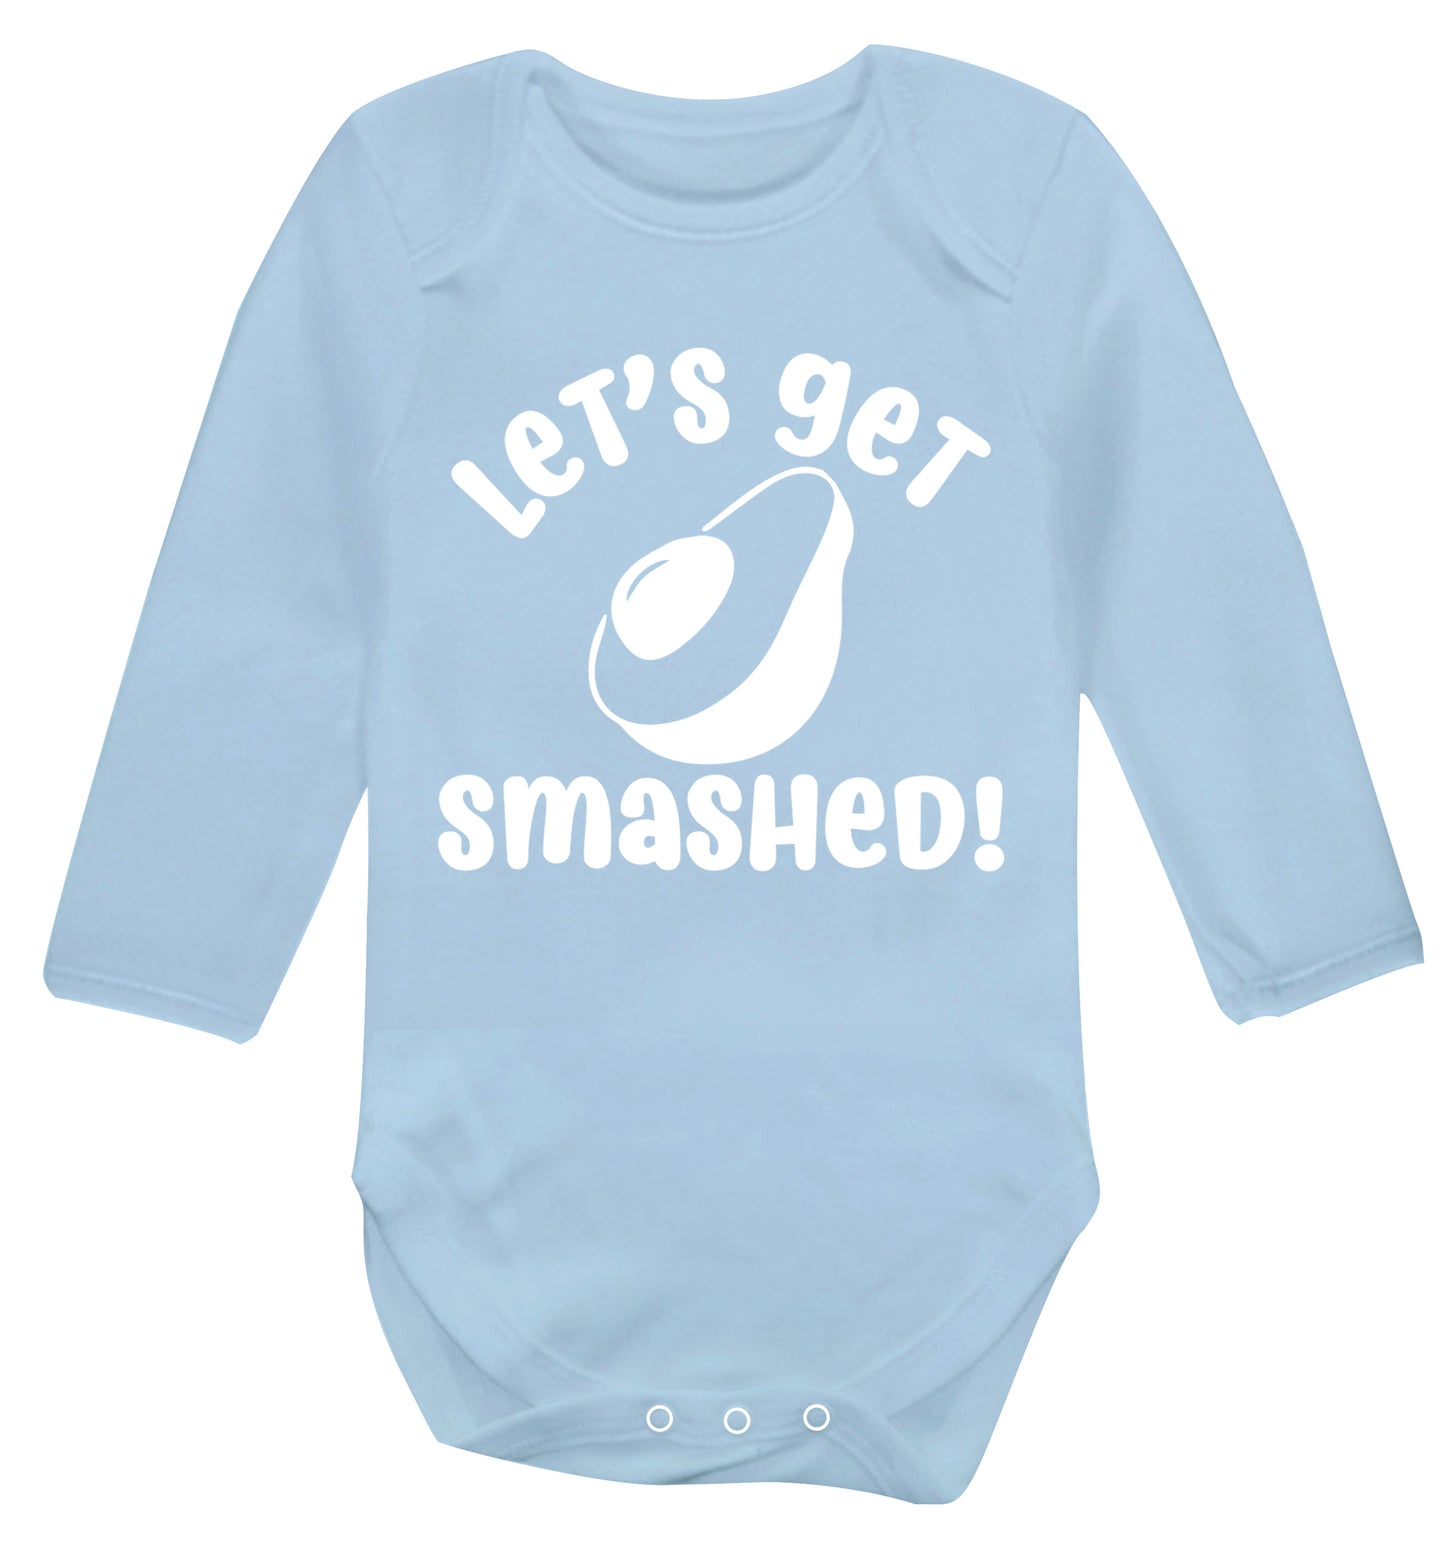 Let's get smashed Baby Vest long sleeved pale blue 6-12 months